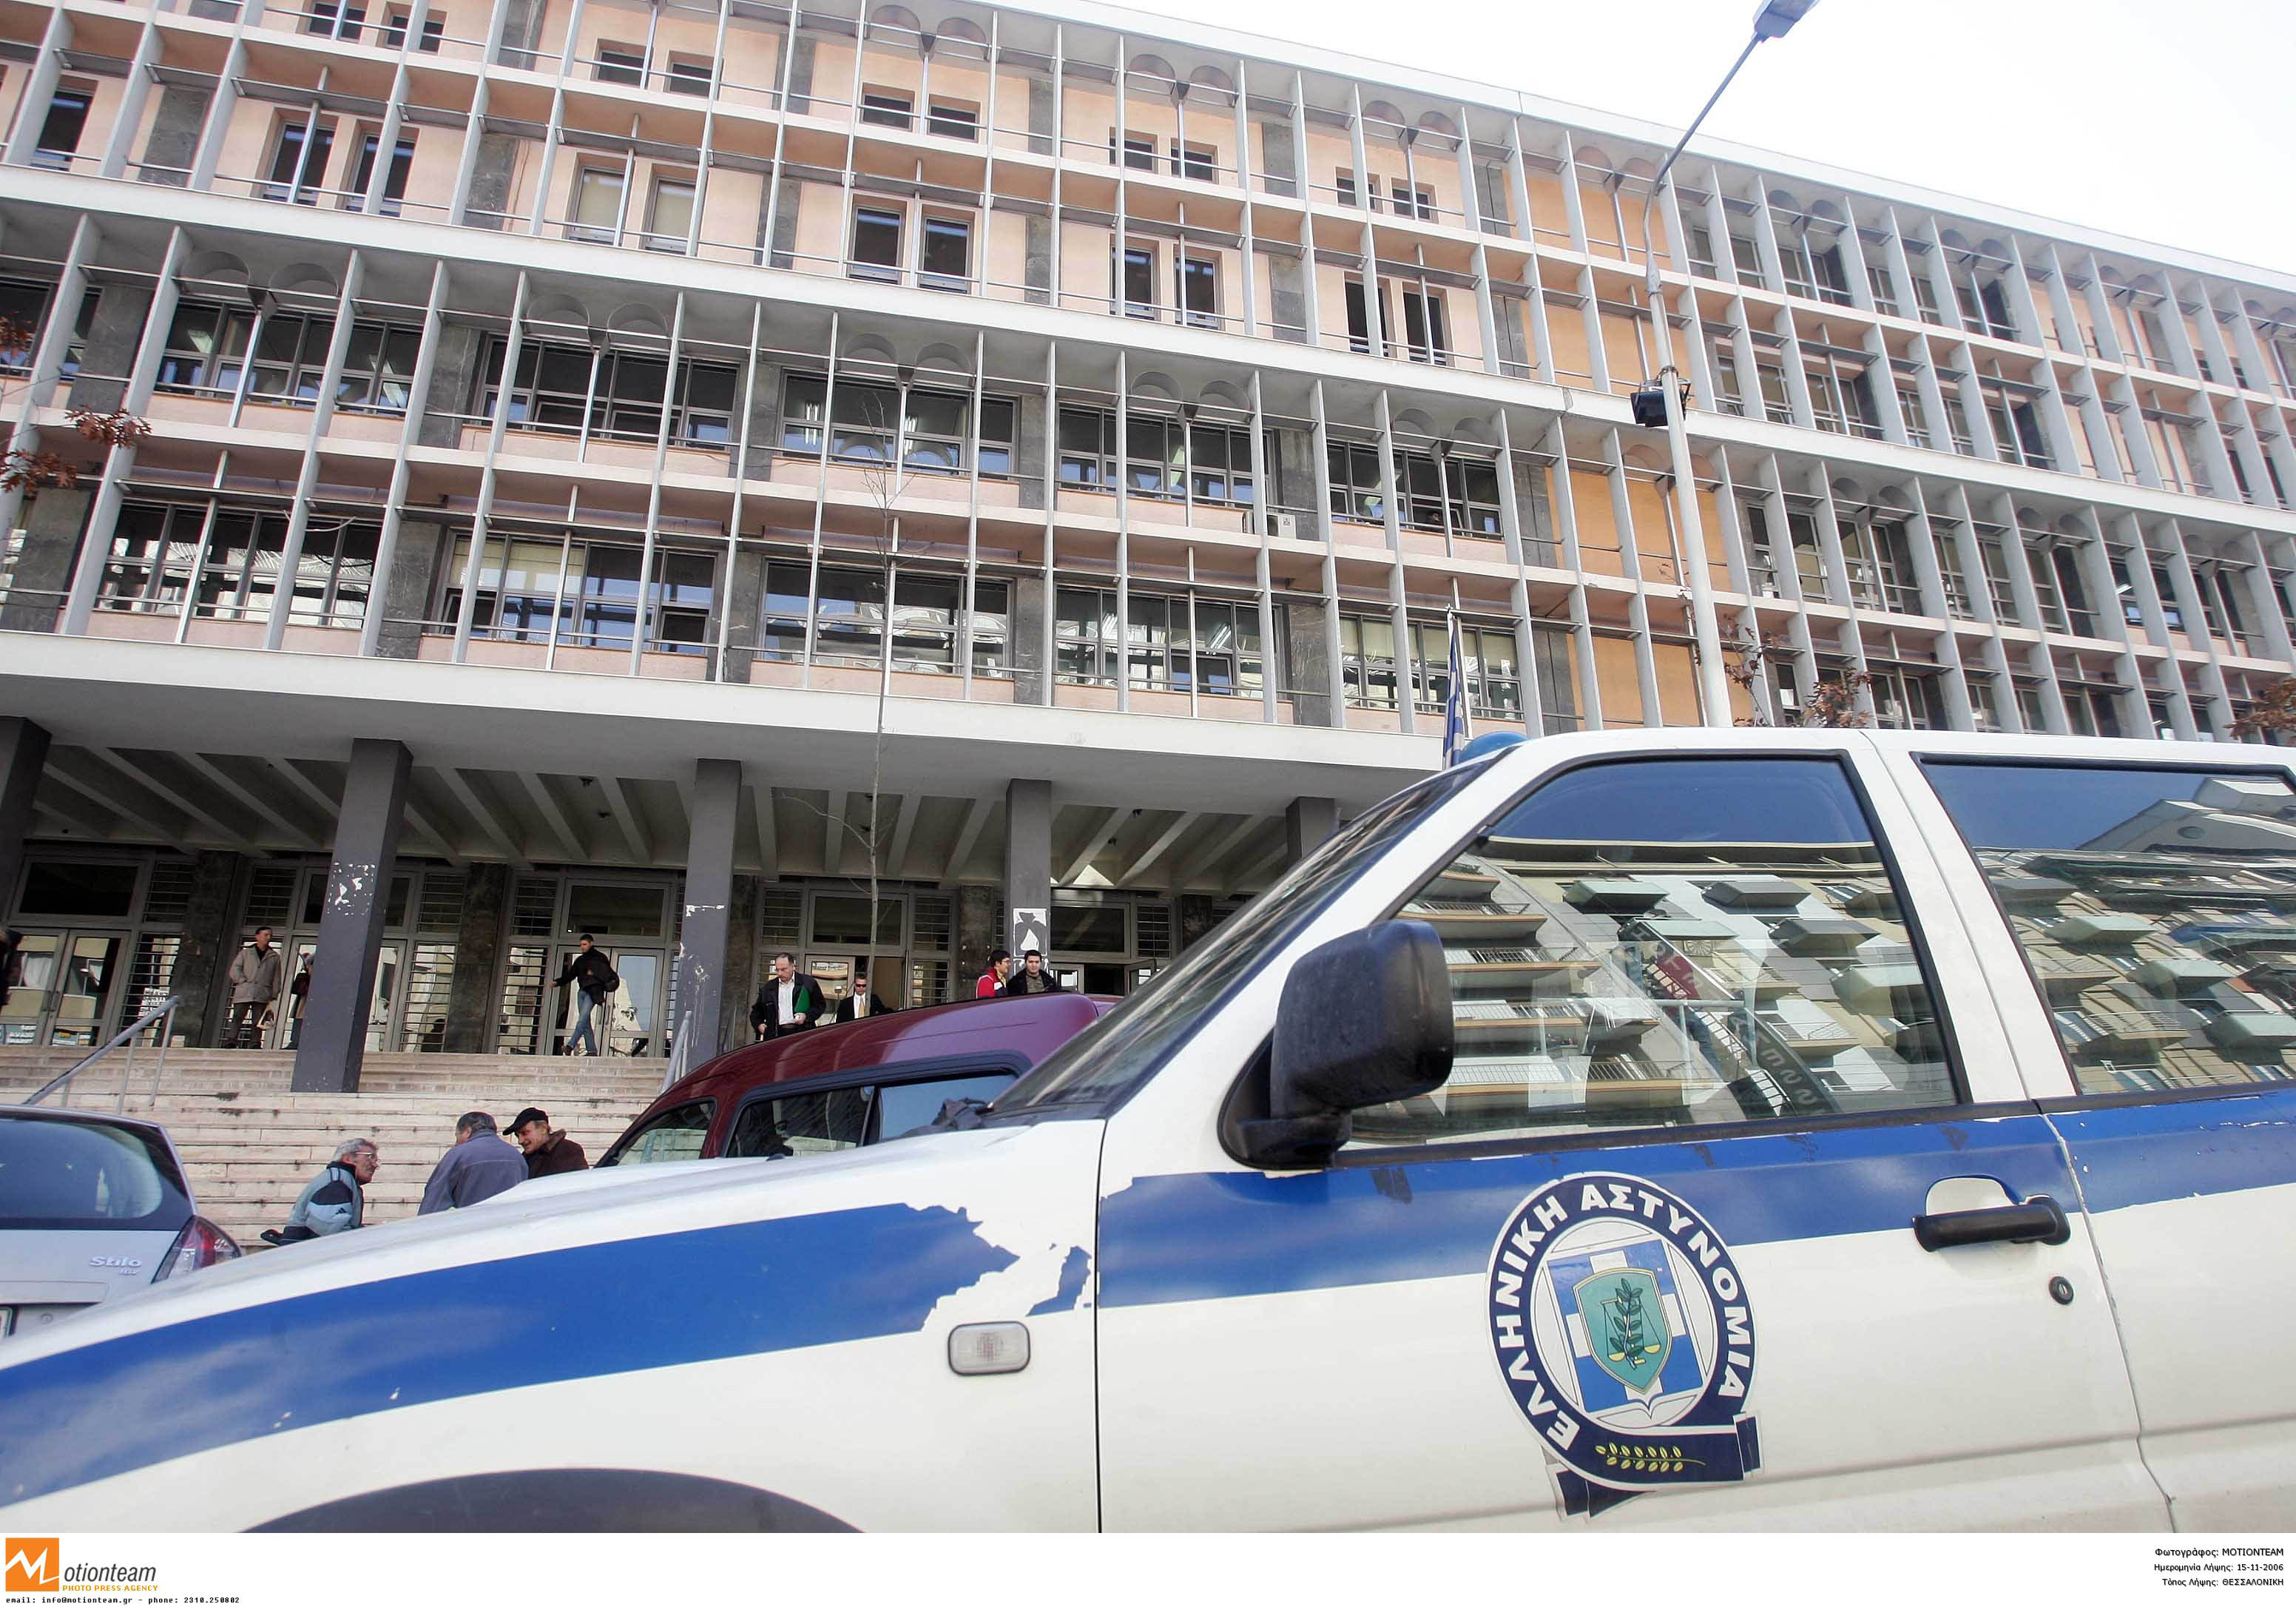 Φώναξα “ο θεός είναι μεγάλος” γιατί είδα έλληνες αστυνομικούς